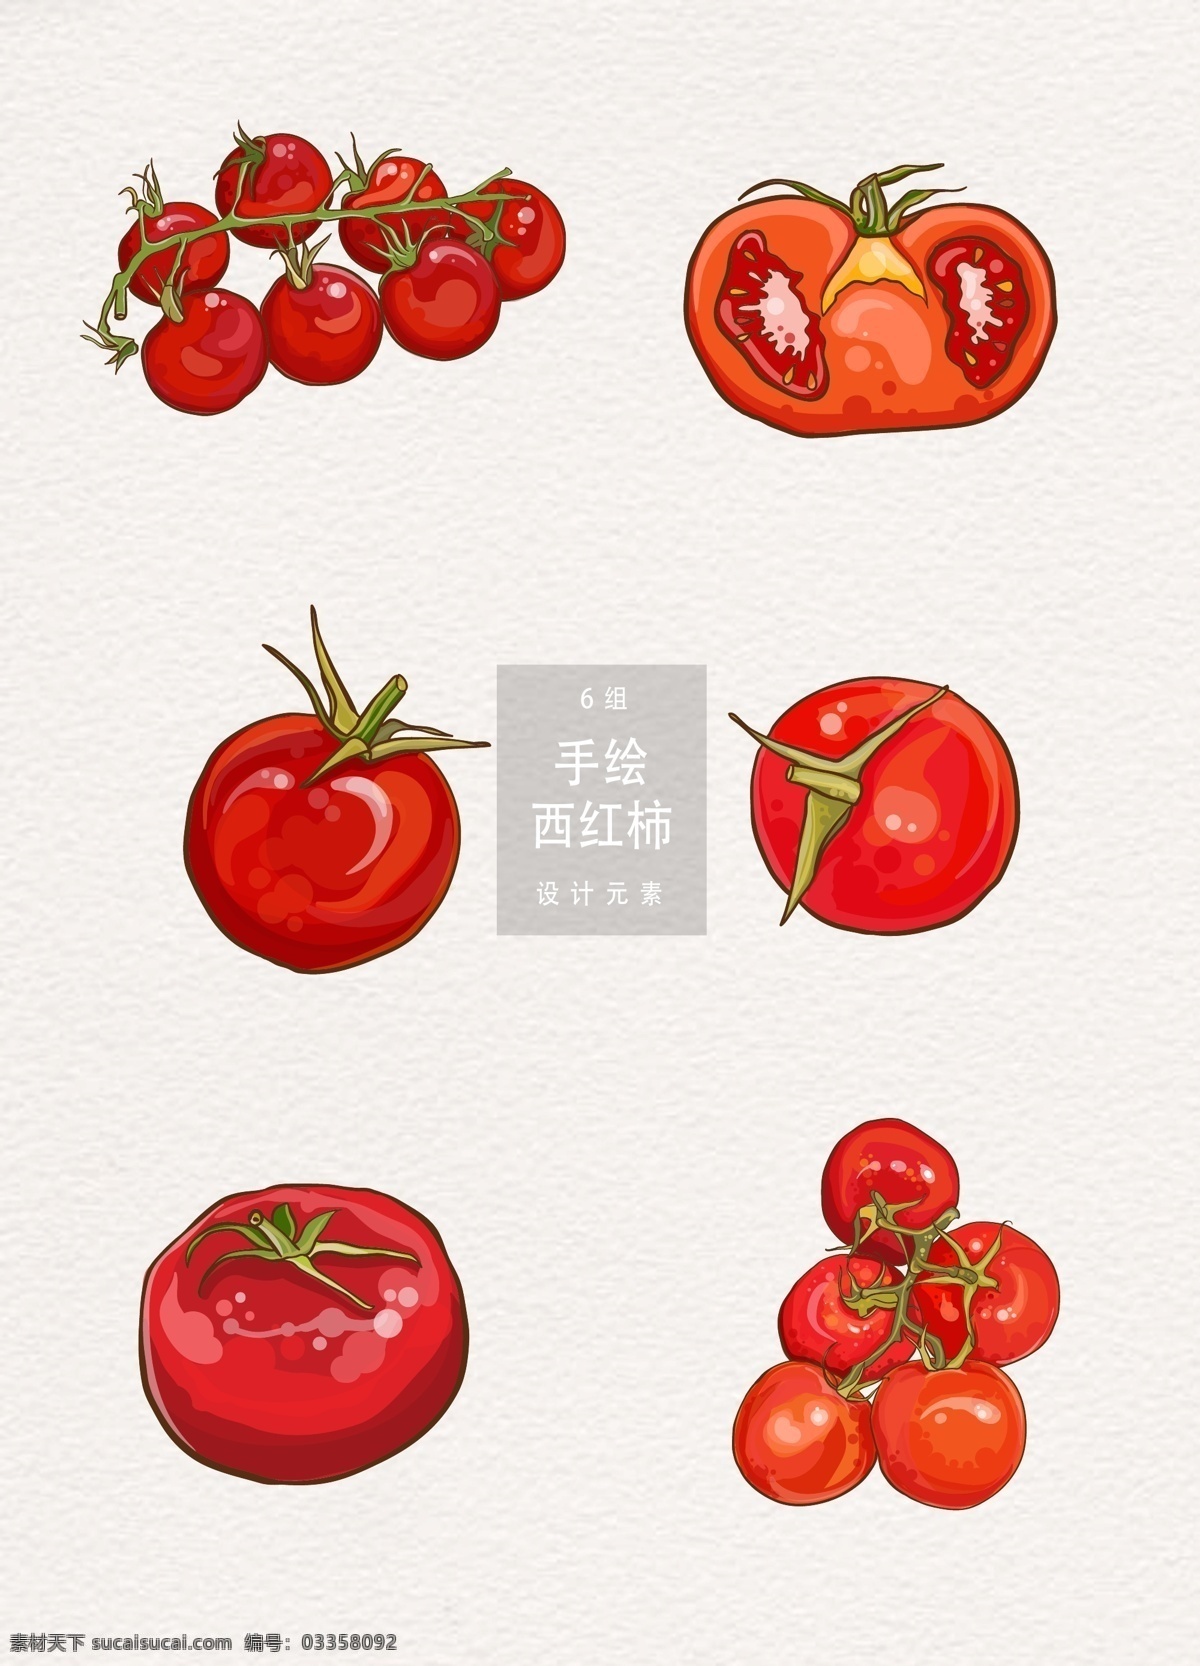 红色 手绘 西红柿 矢量 蔬菜 矢量图 手绘插画 ai素材 手绘西红柿 手绘蔬菜